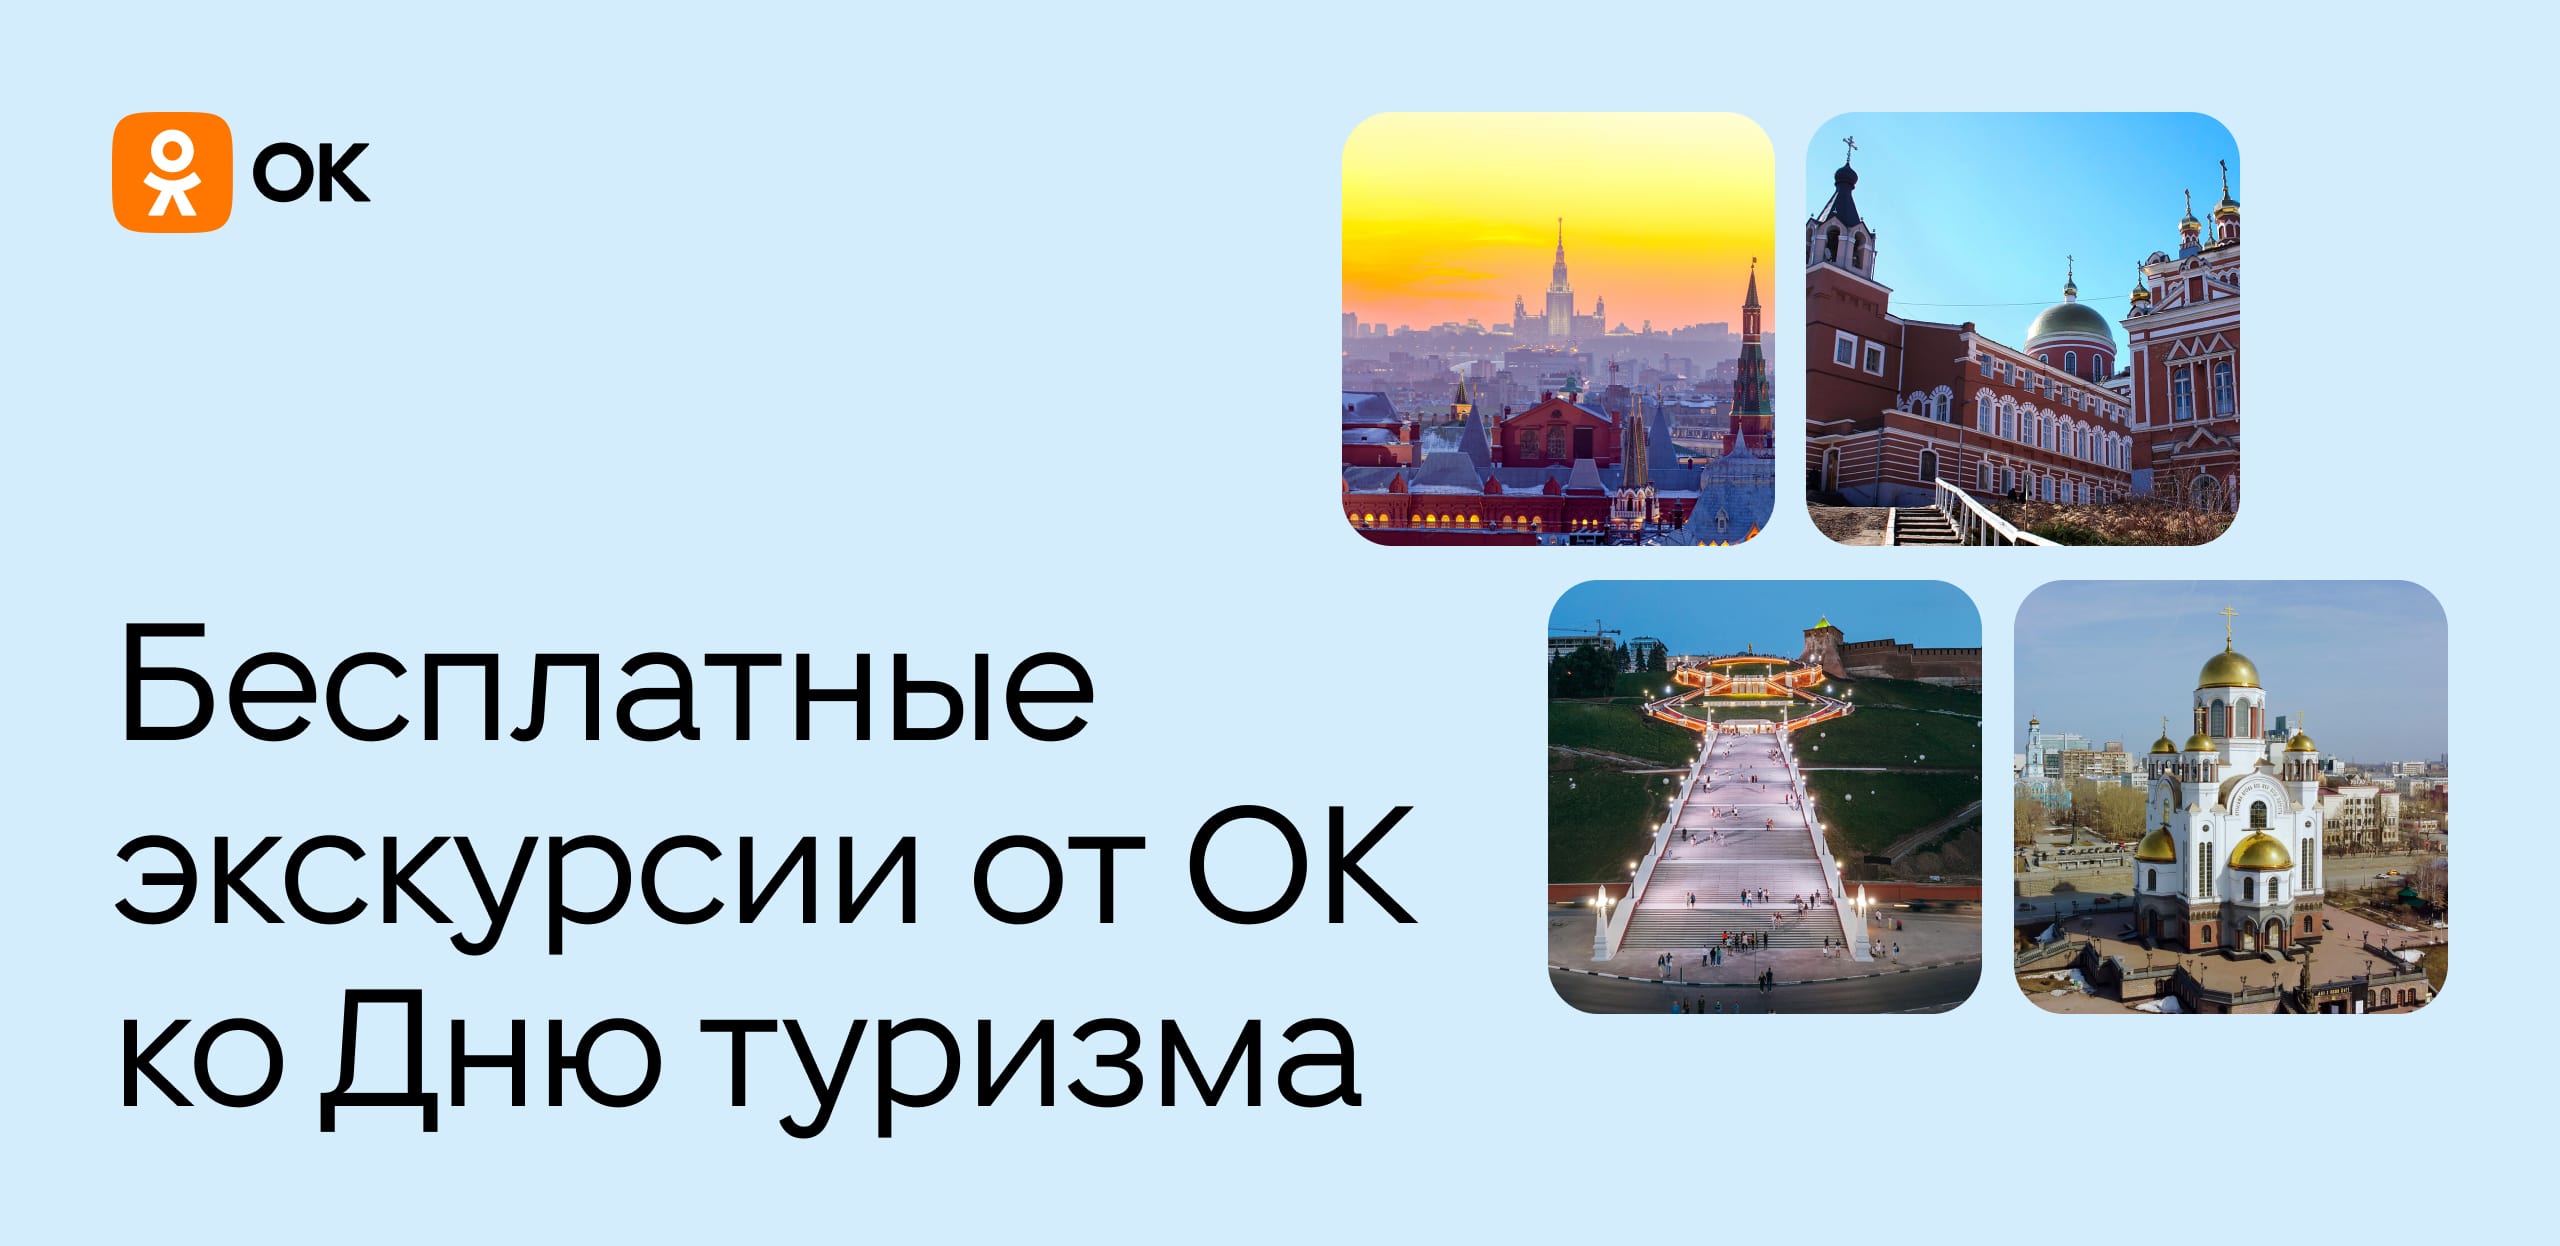 В честь Дня туризма Одноклассники проведут экскурсии по 12 городам России